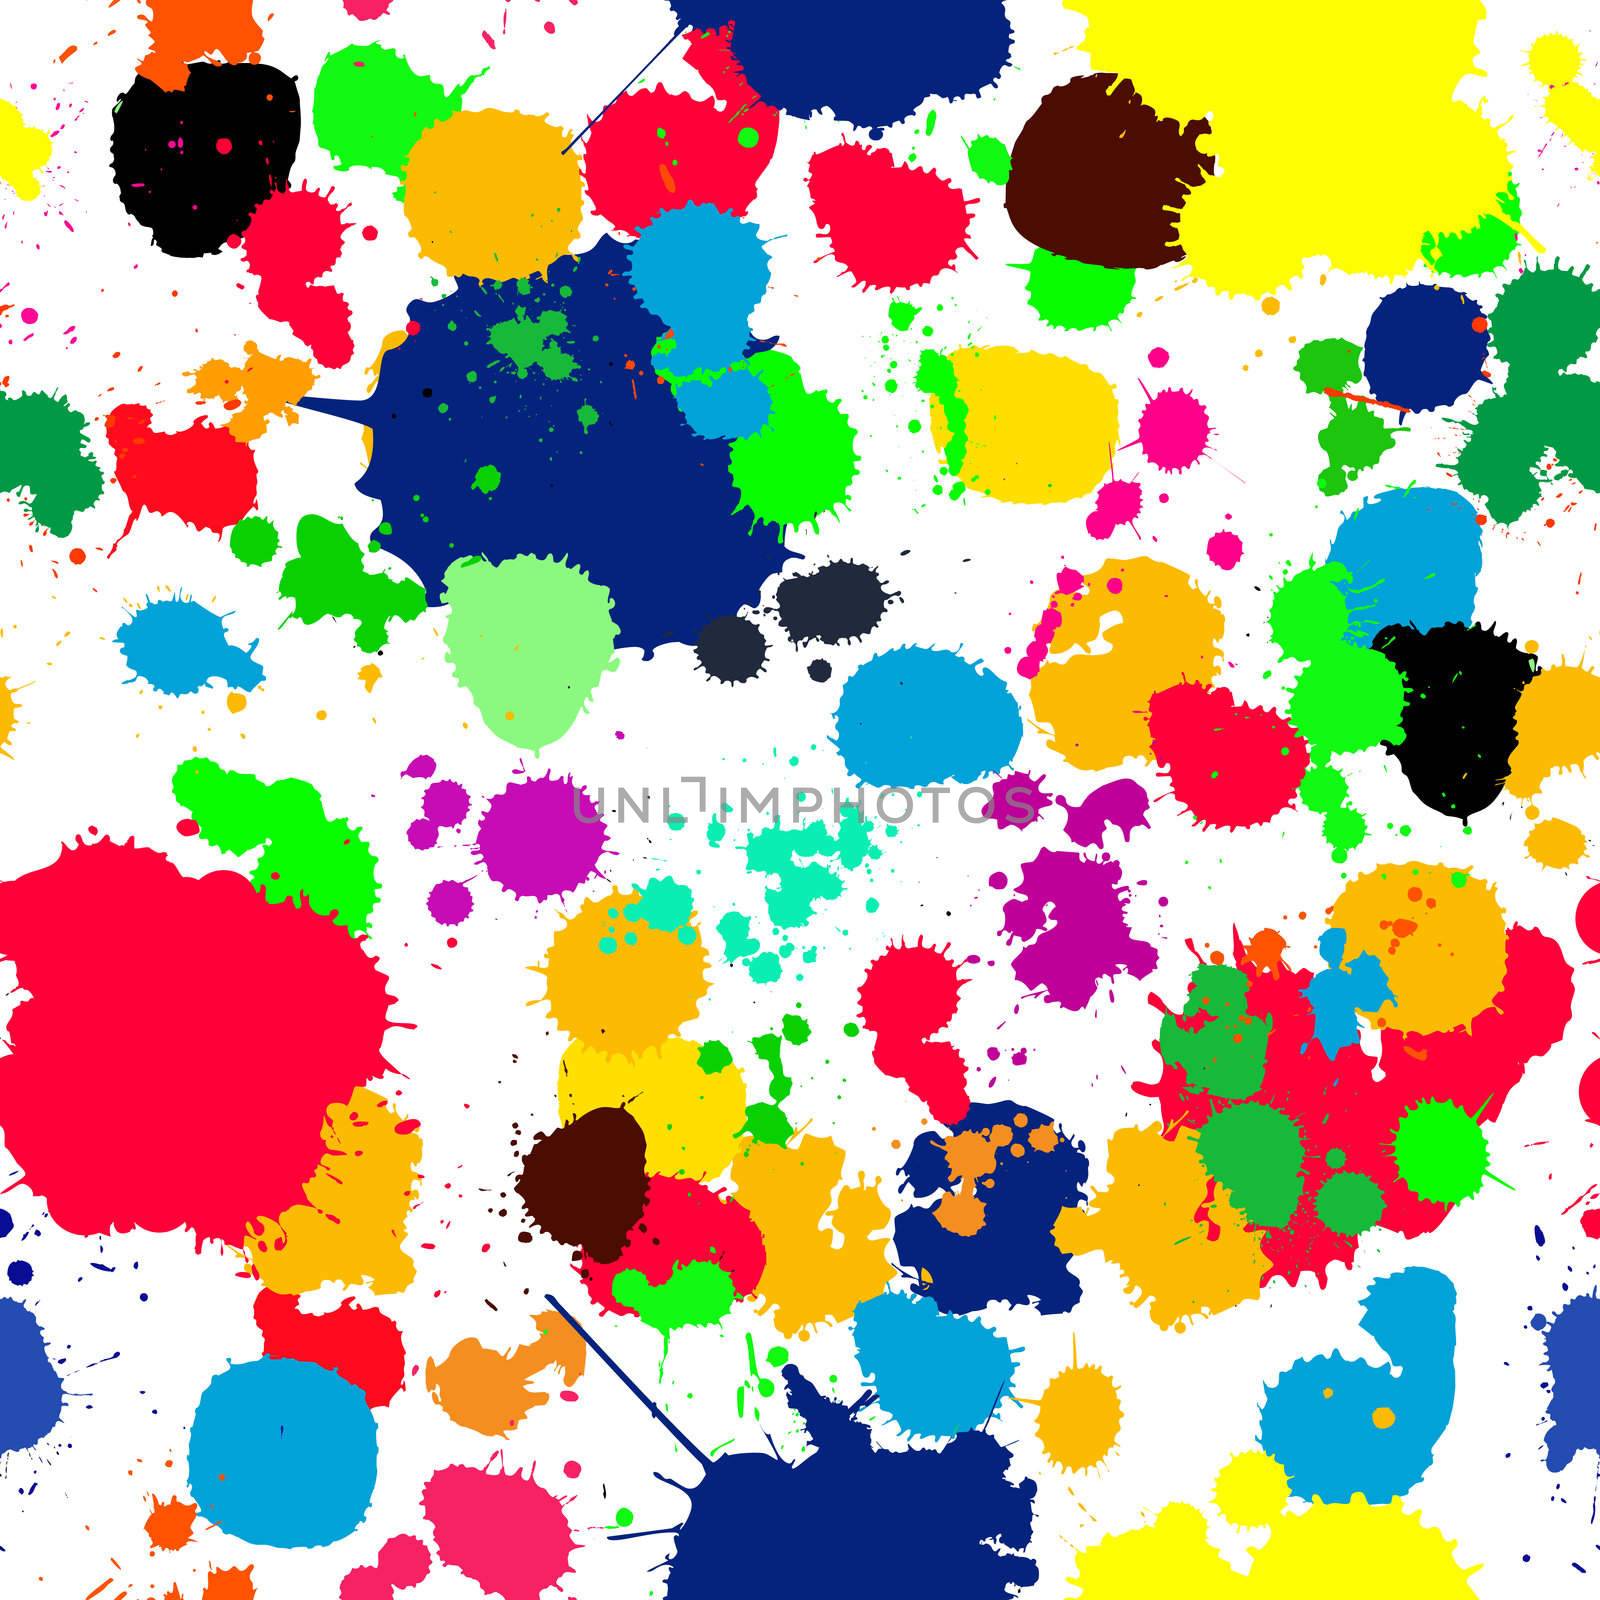 ink splats pattern in colors by Lirch